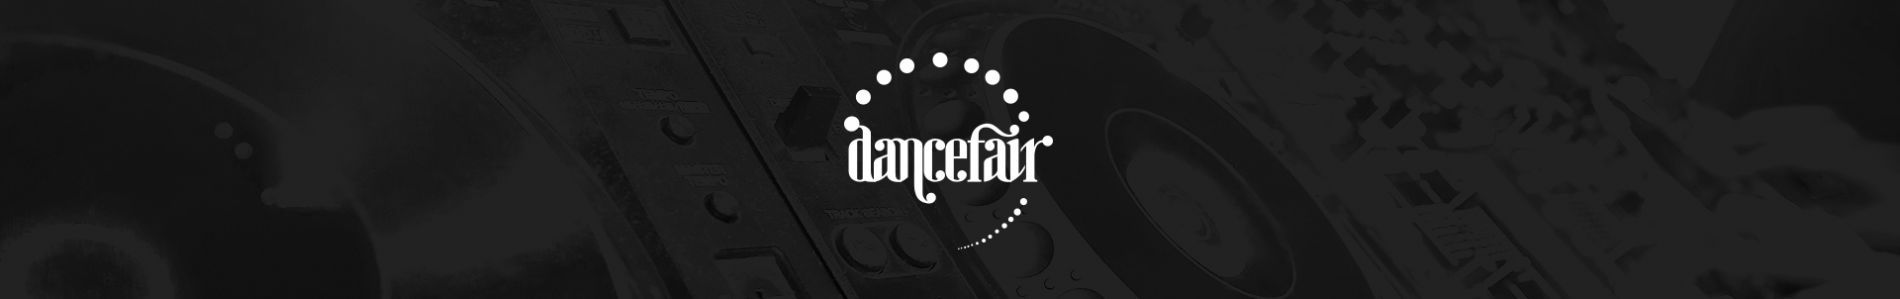 Dancefair 2017